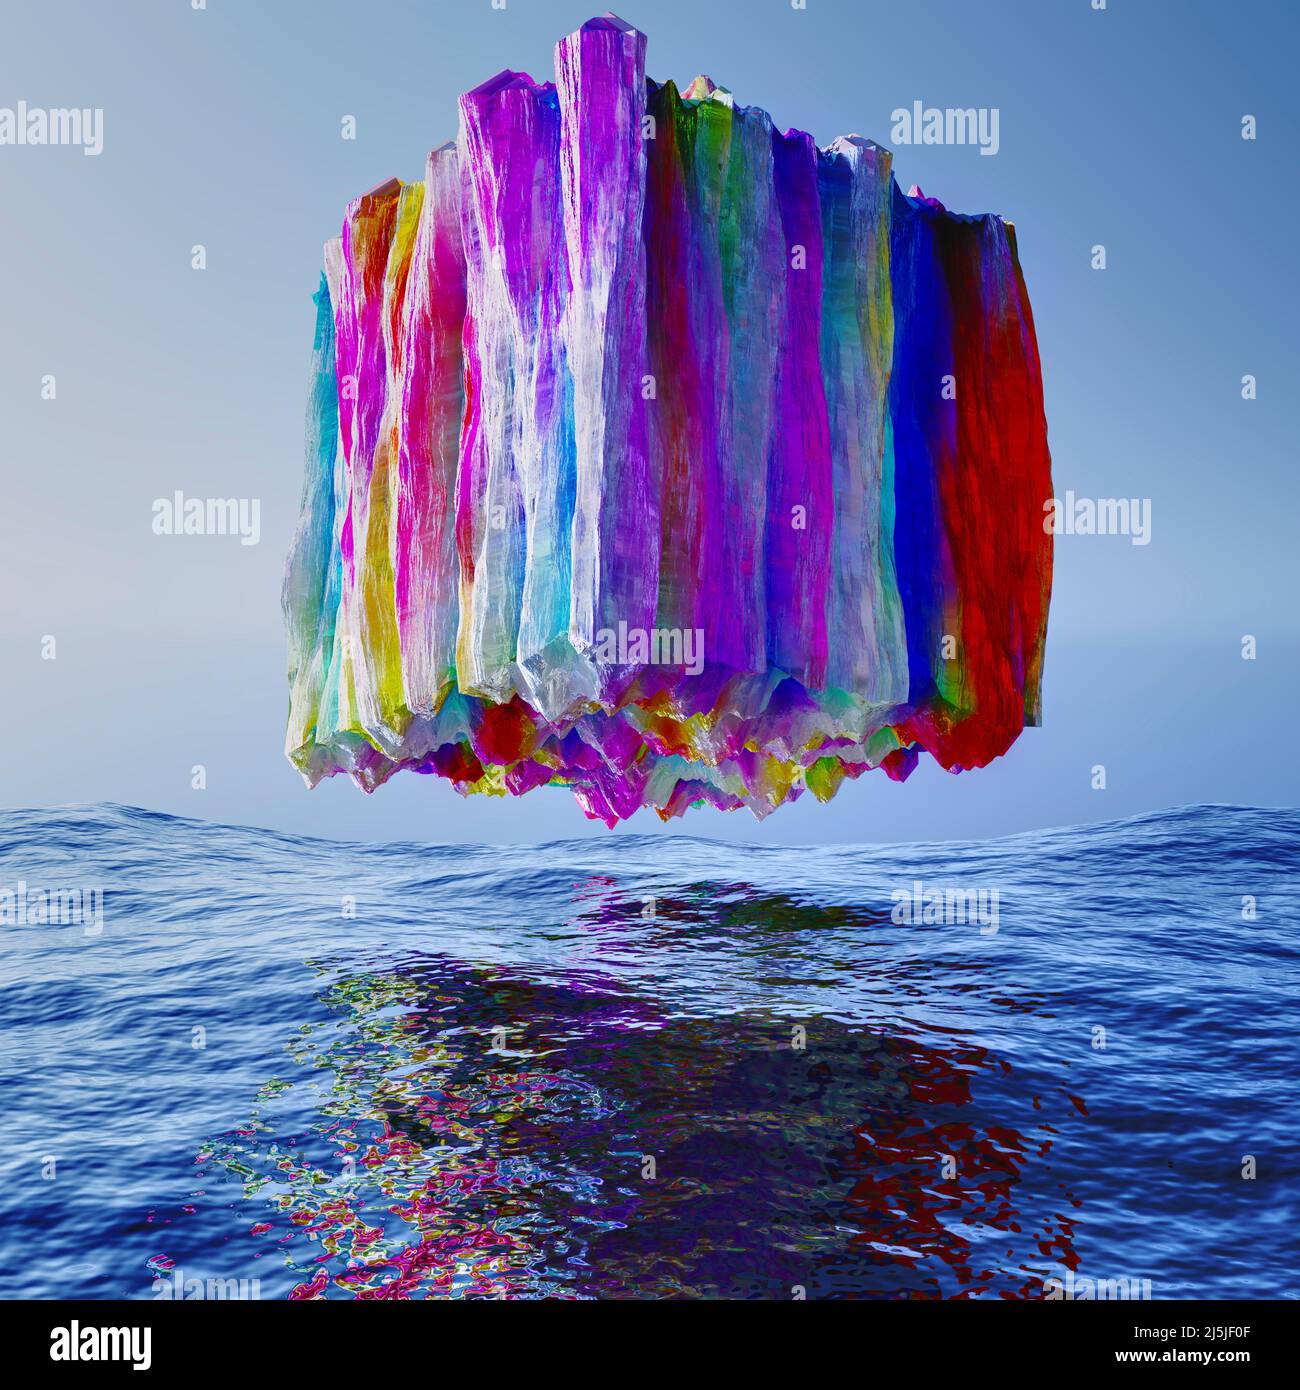 3d ilustración de un vibrante cubo de cristal multicolor flotando sobre aguas tranquilas Foto de stock